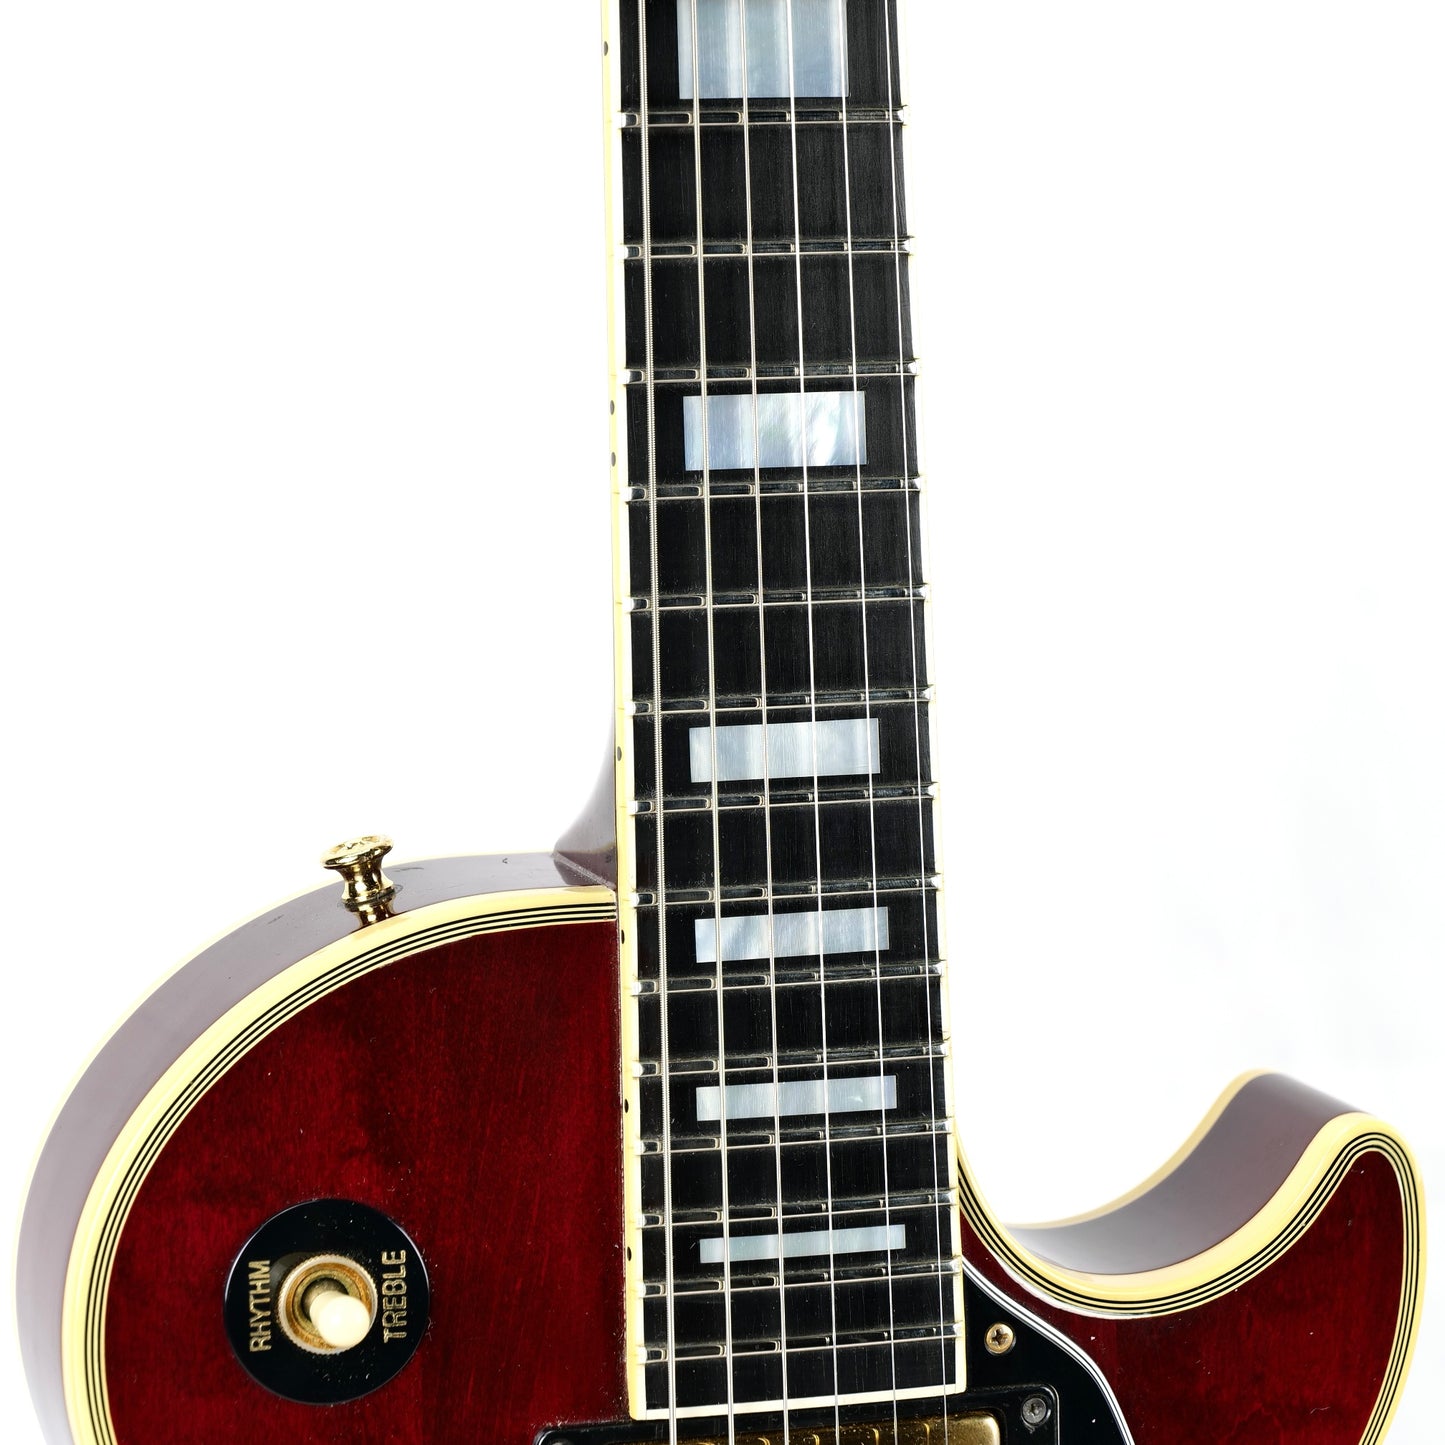 1989 Gibson Les Paul Custom - Cherry Burst